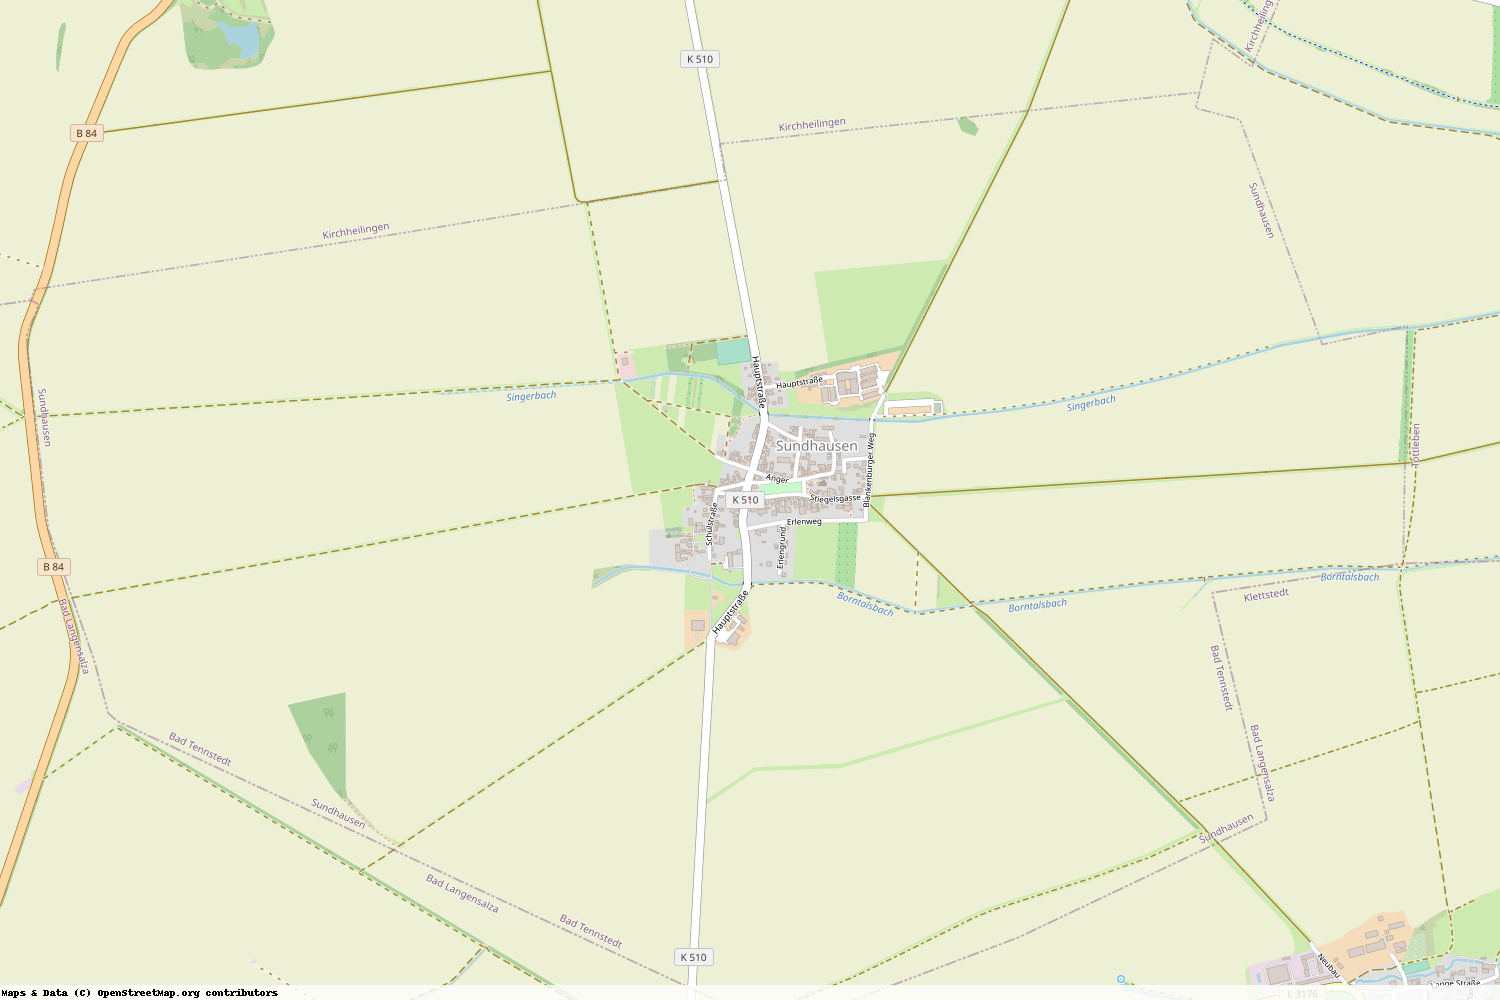 Ist gerade Stromausfall in Thüringen - Unstrut-Hainich-Kreis - Sundhausen?